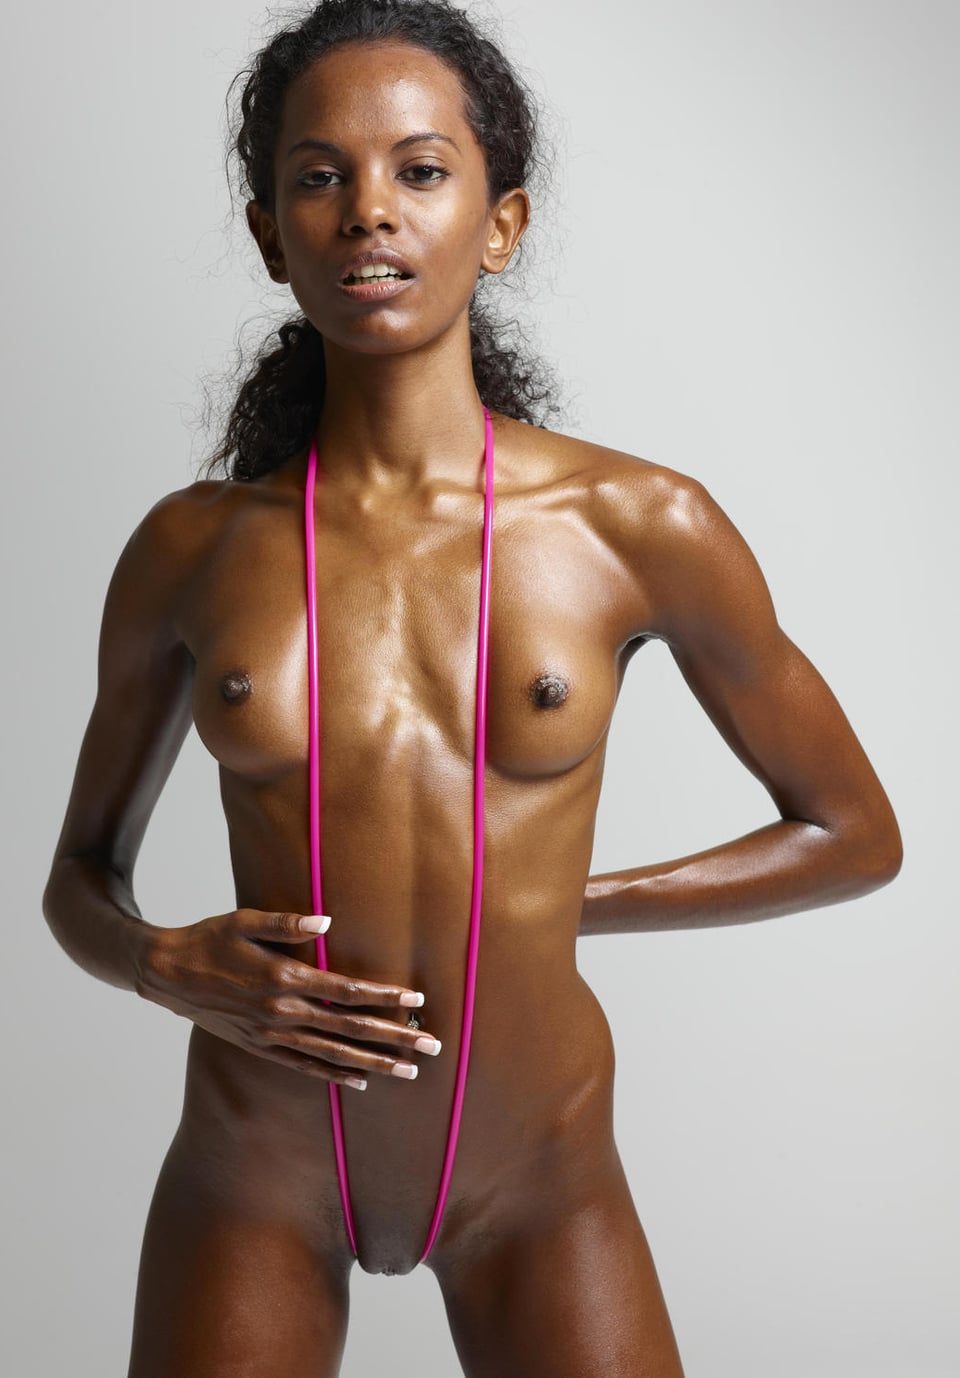 best of Nude images Skinny black females